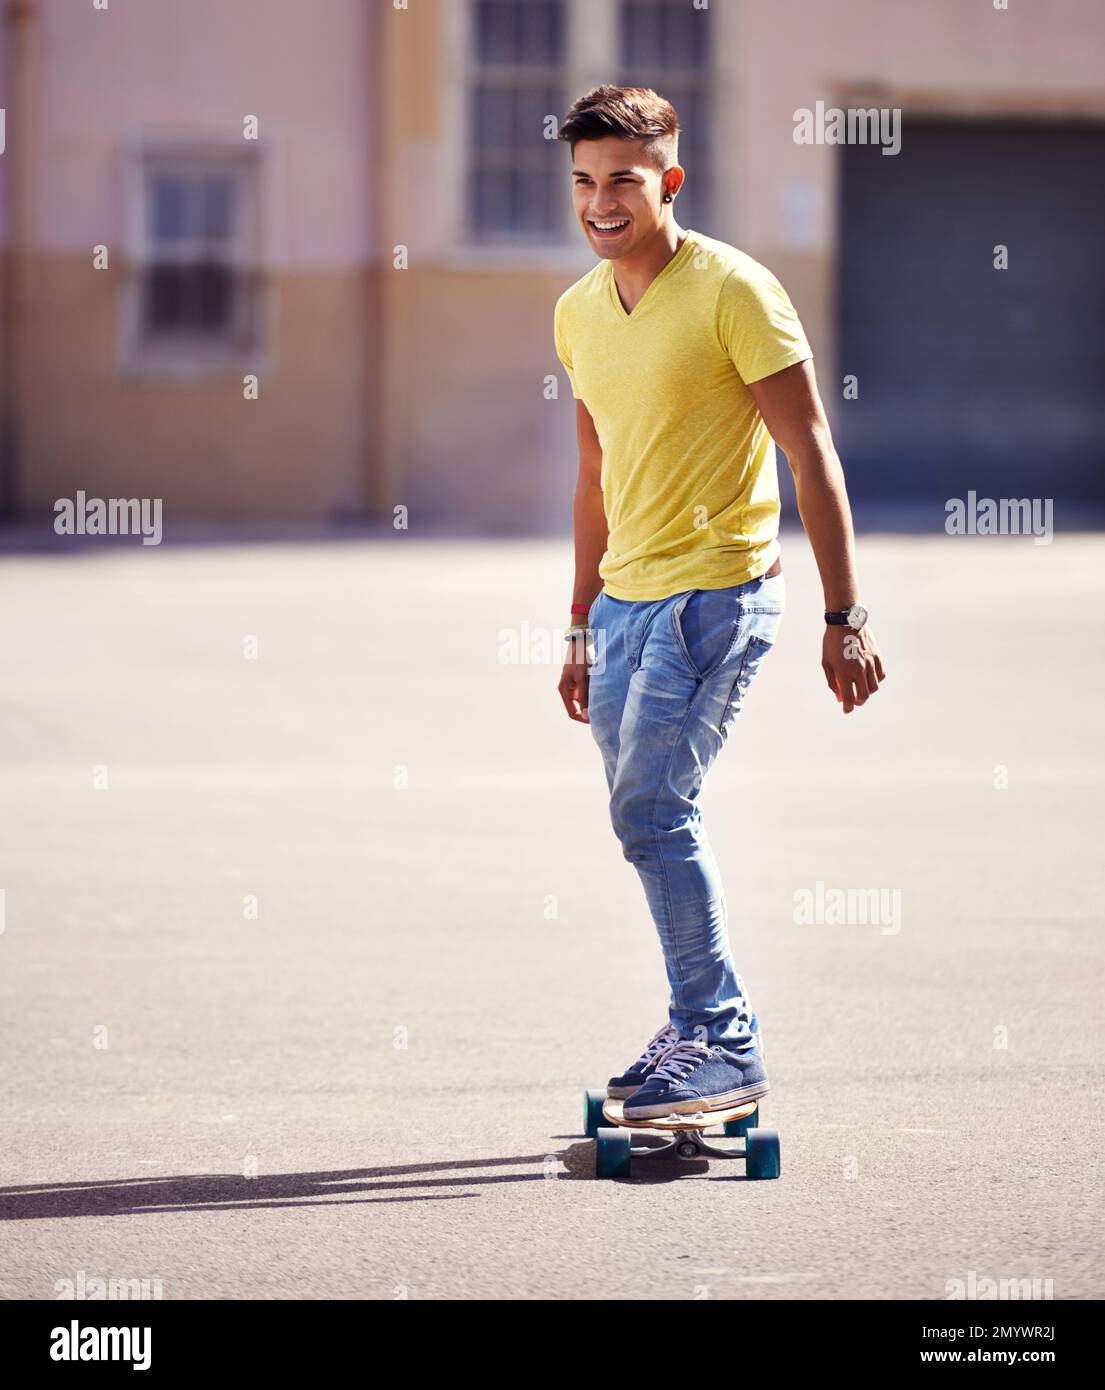 Prêt à tirer sa prochaine astuce. un jeune homme qui fait du skateboard dans un parc de skate. Banque D'Images